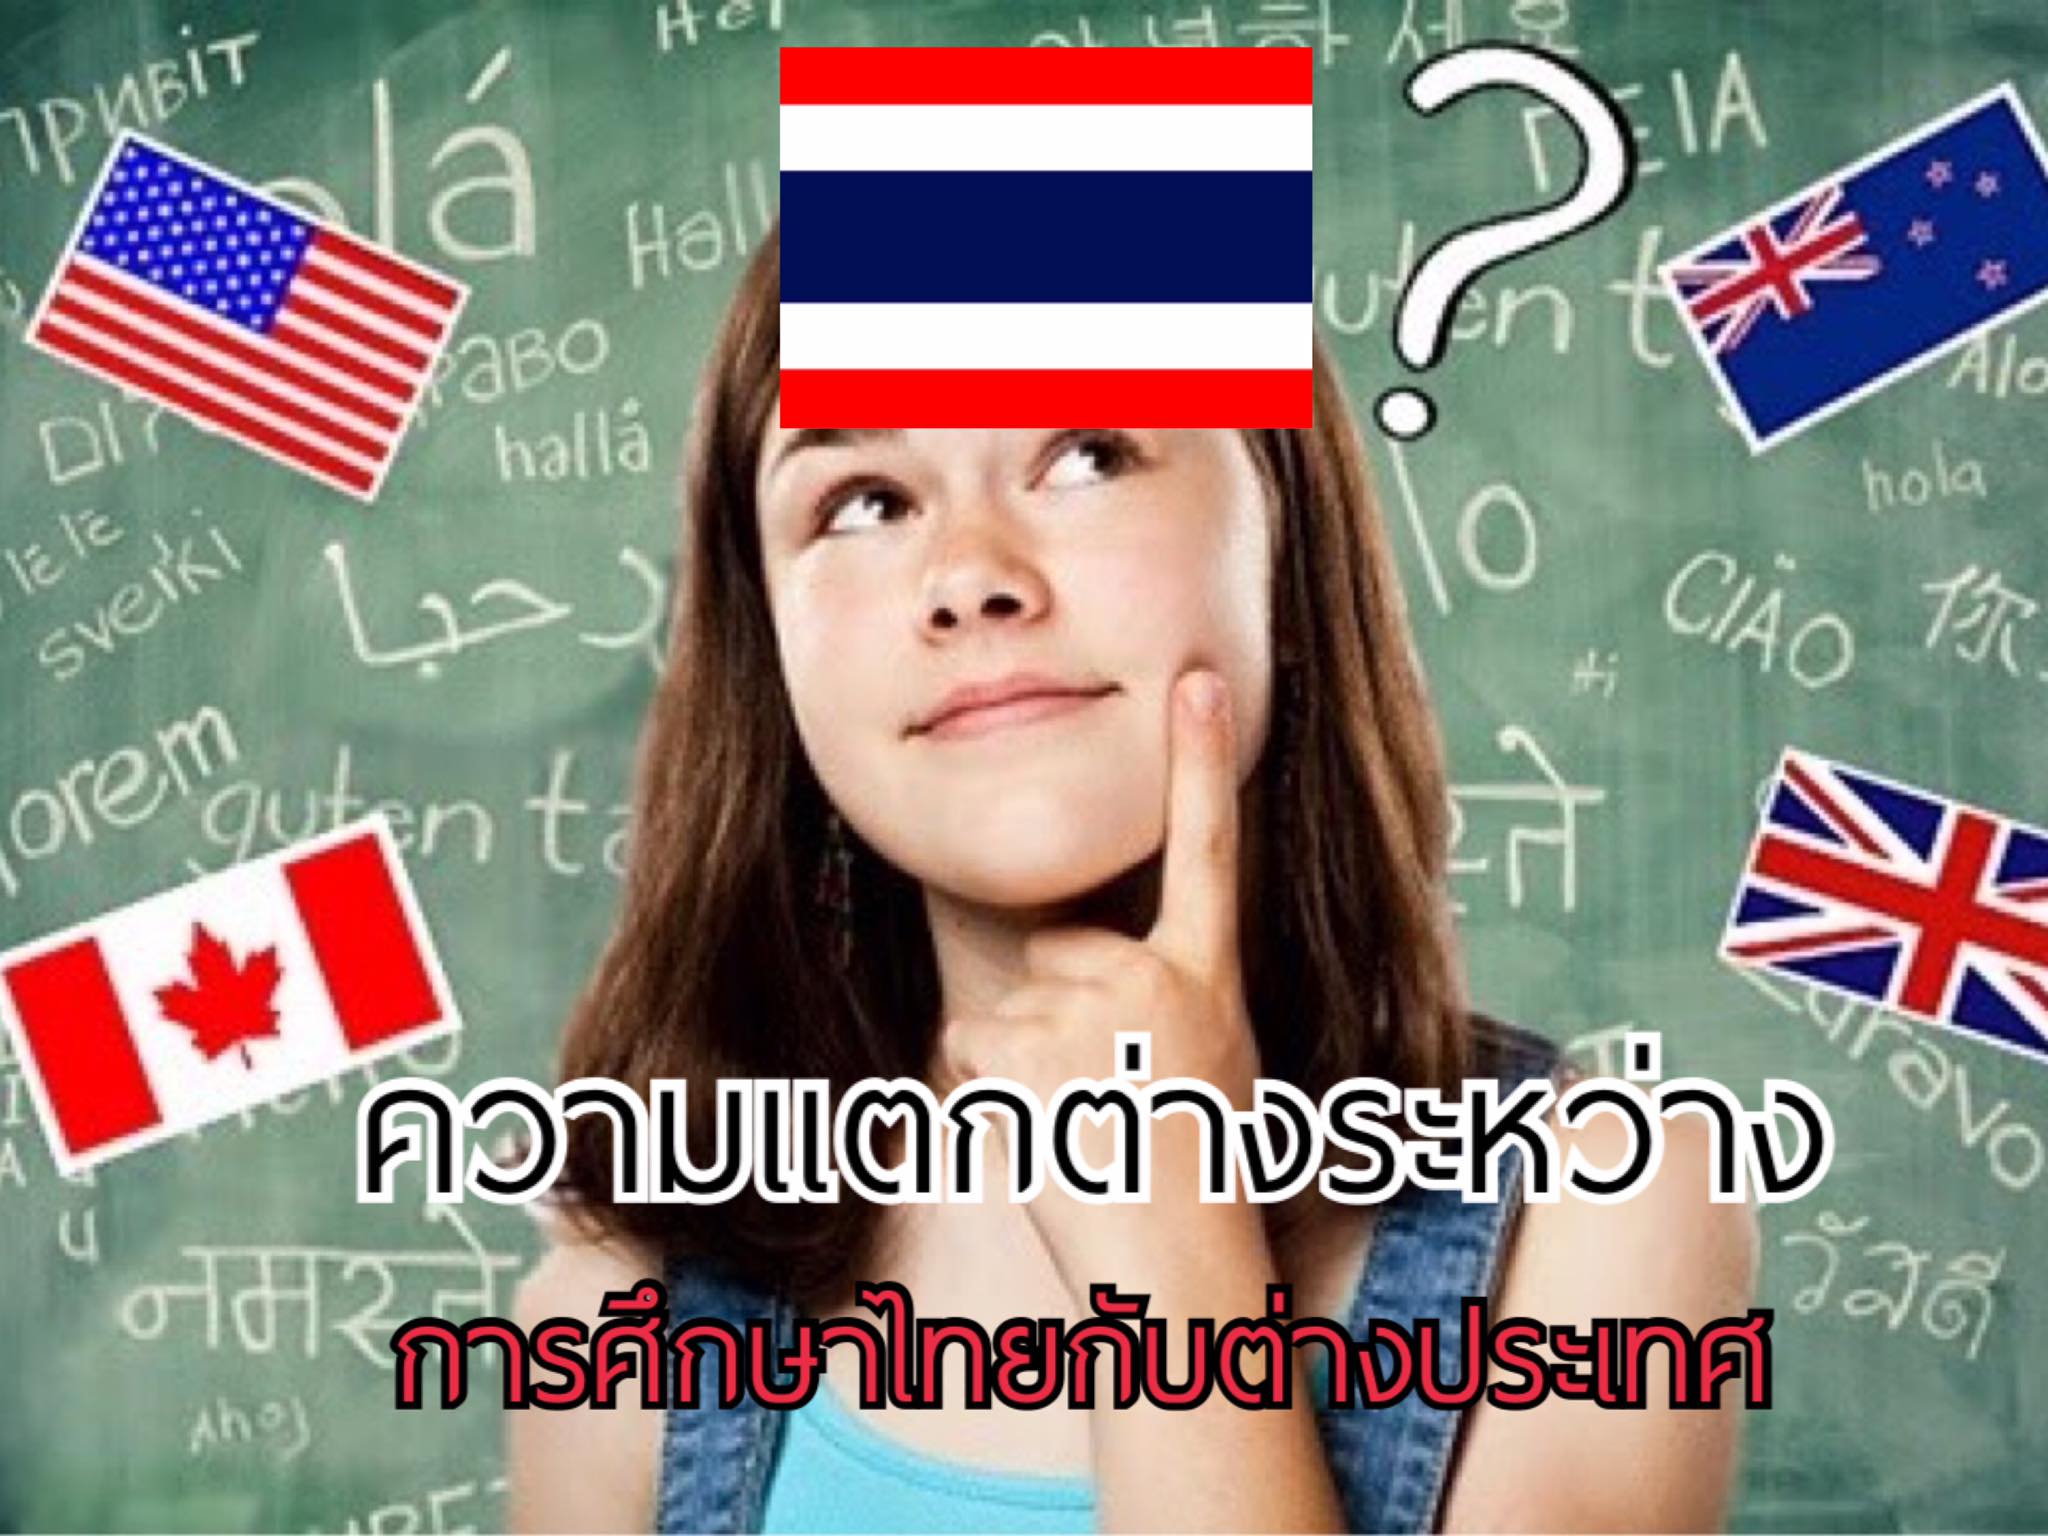 เปรียบเทียบ ความแตกต่างระหว่าง การศึกษาไทยกับต่างประเทศ แบบชัดแจ้ง